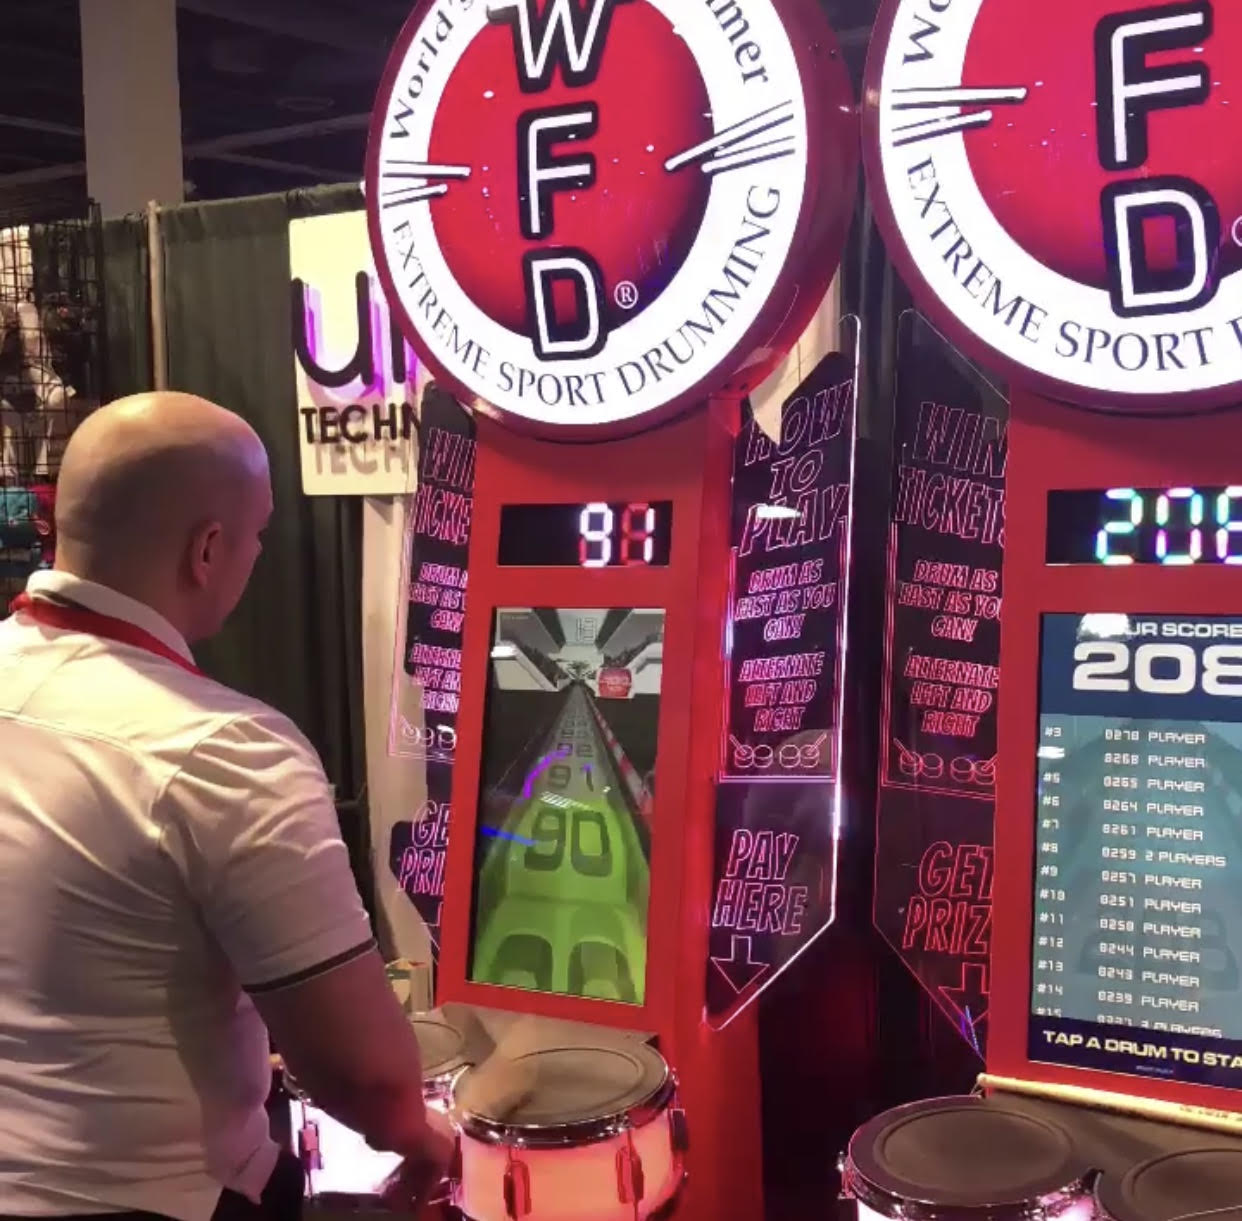 World's Fastest Drummer Arcade Game